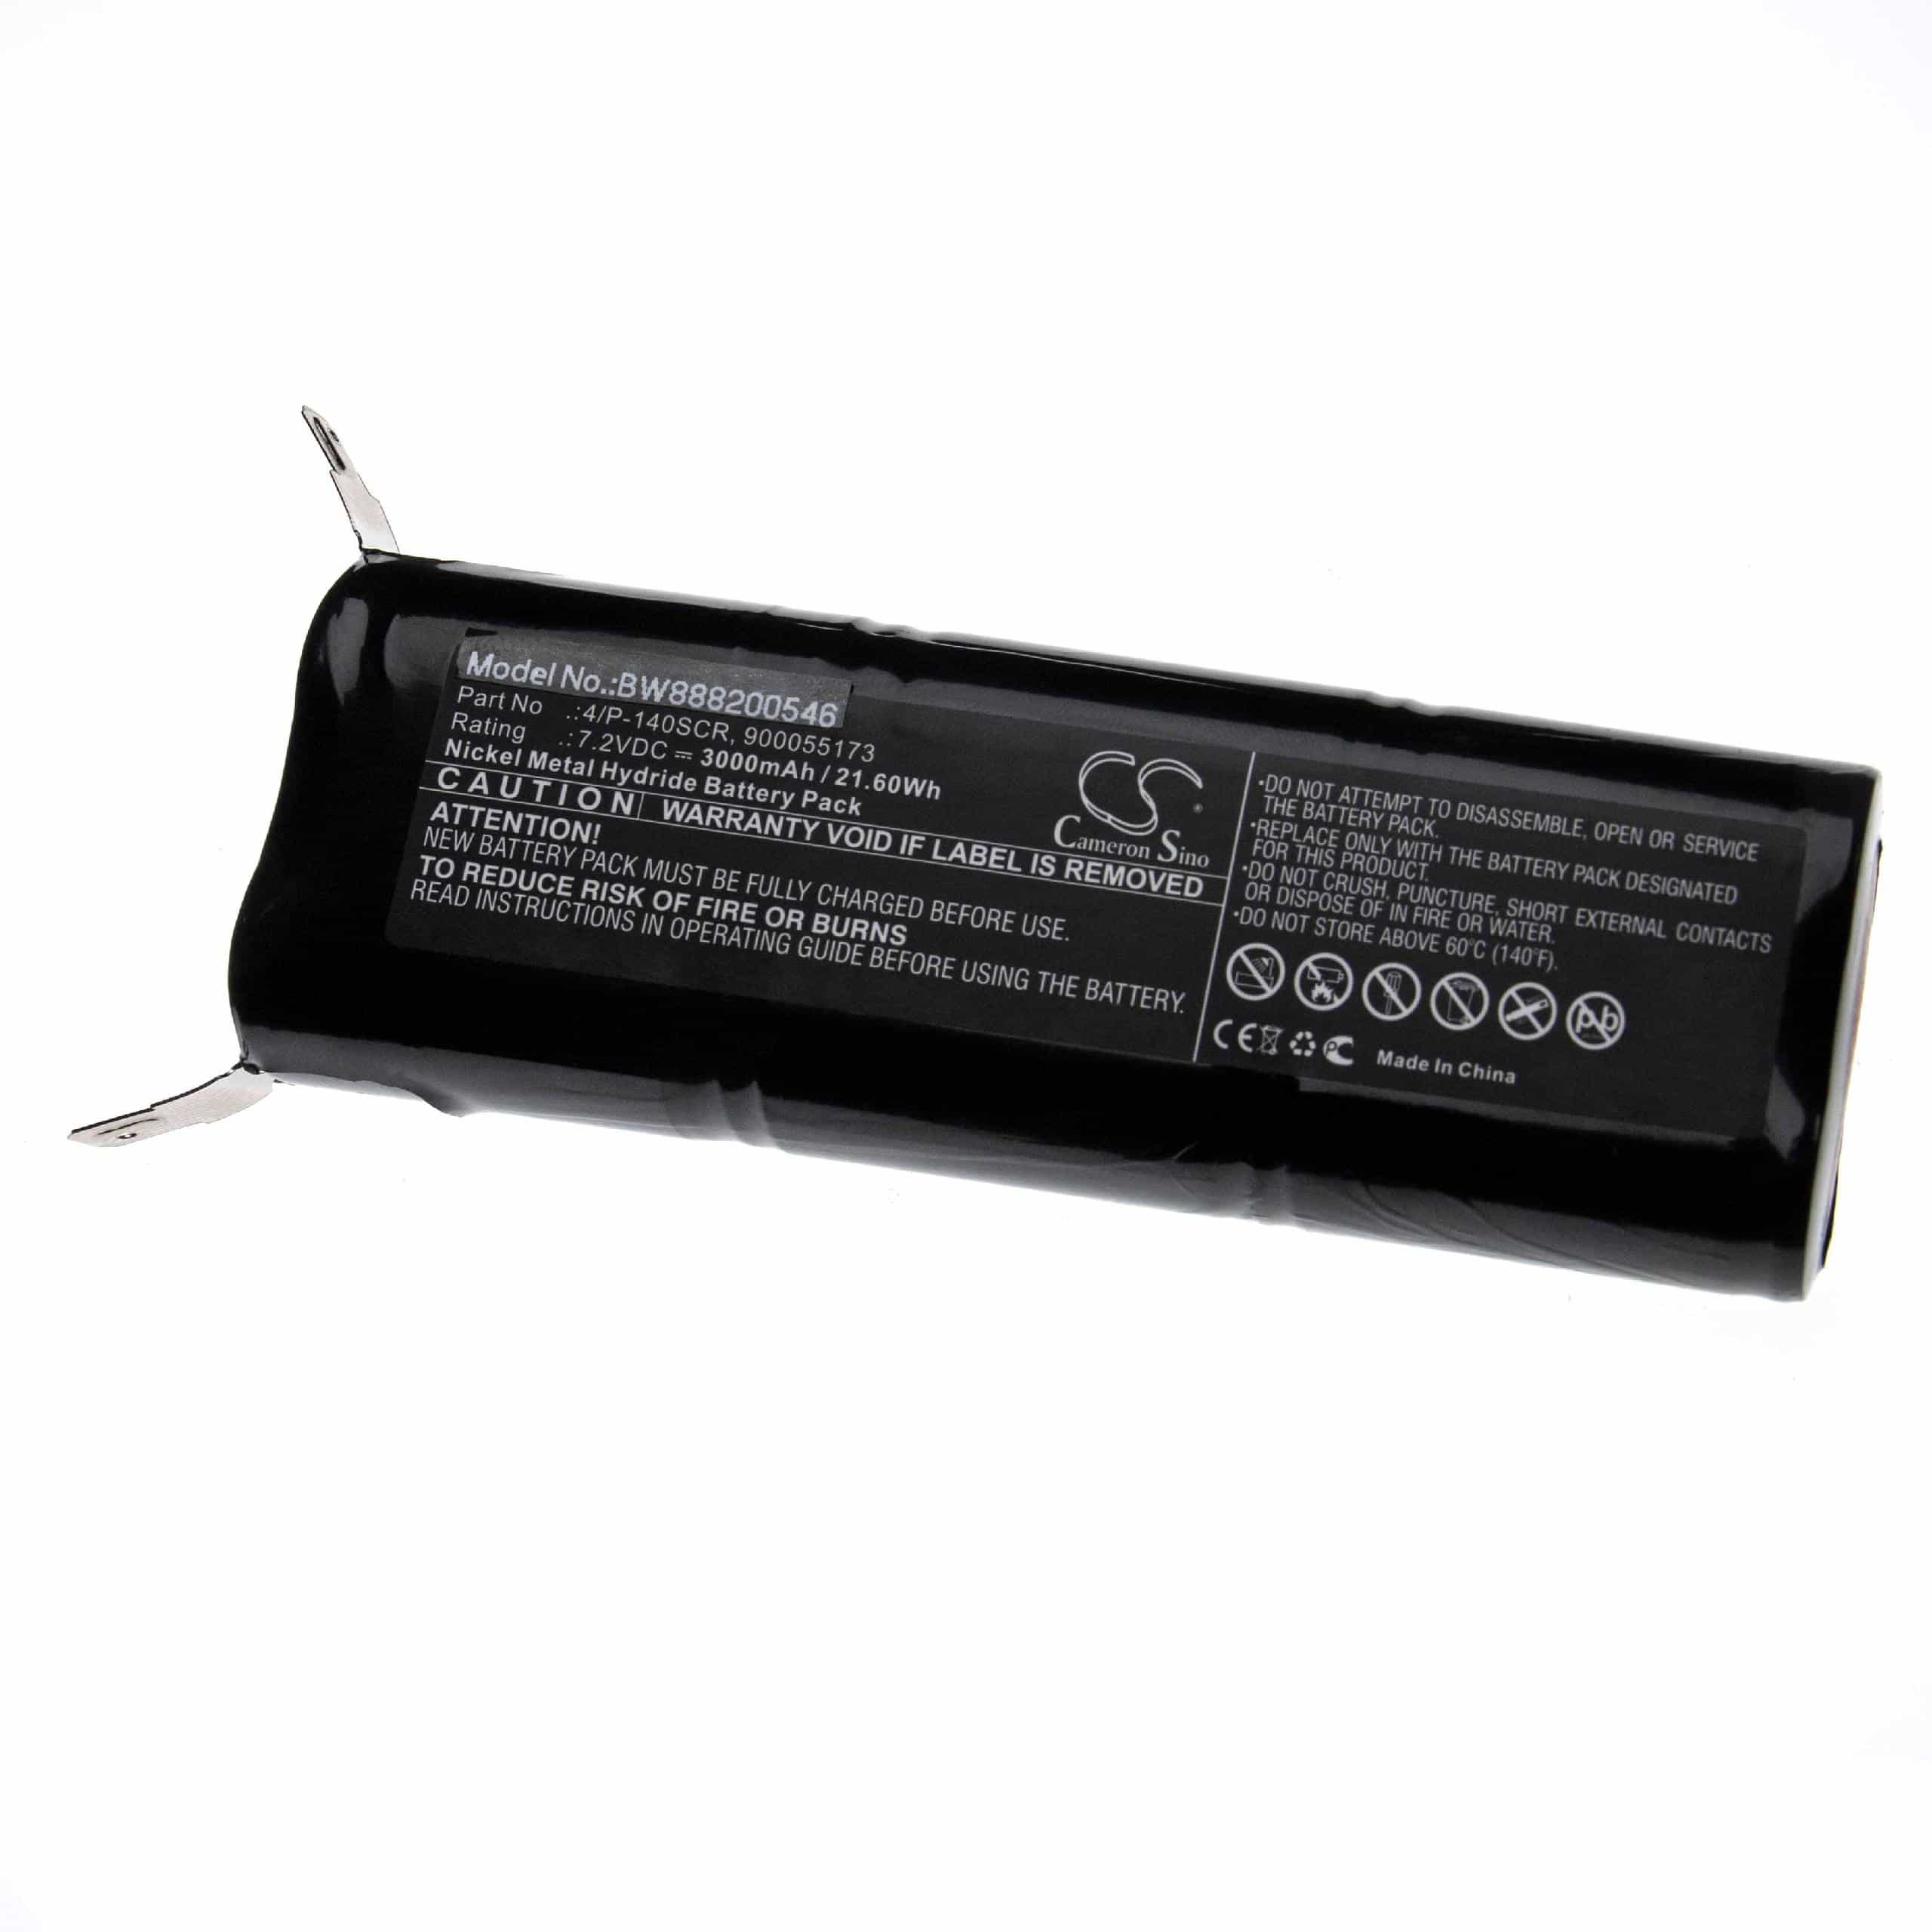 Batterie remplace Makita BCM-678135-1, 678135-1, 678132-7, 678114-9 pour aspirateur - 3000mAh 7,2V NiMH